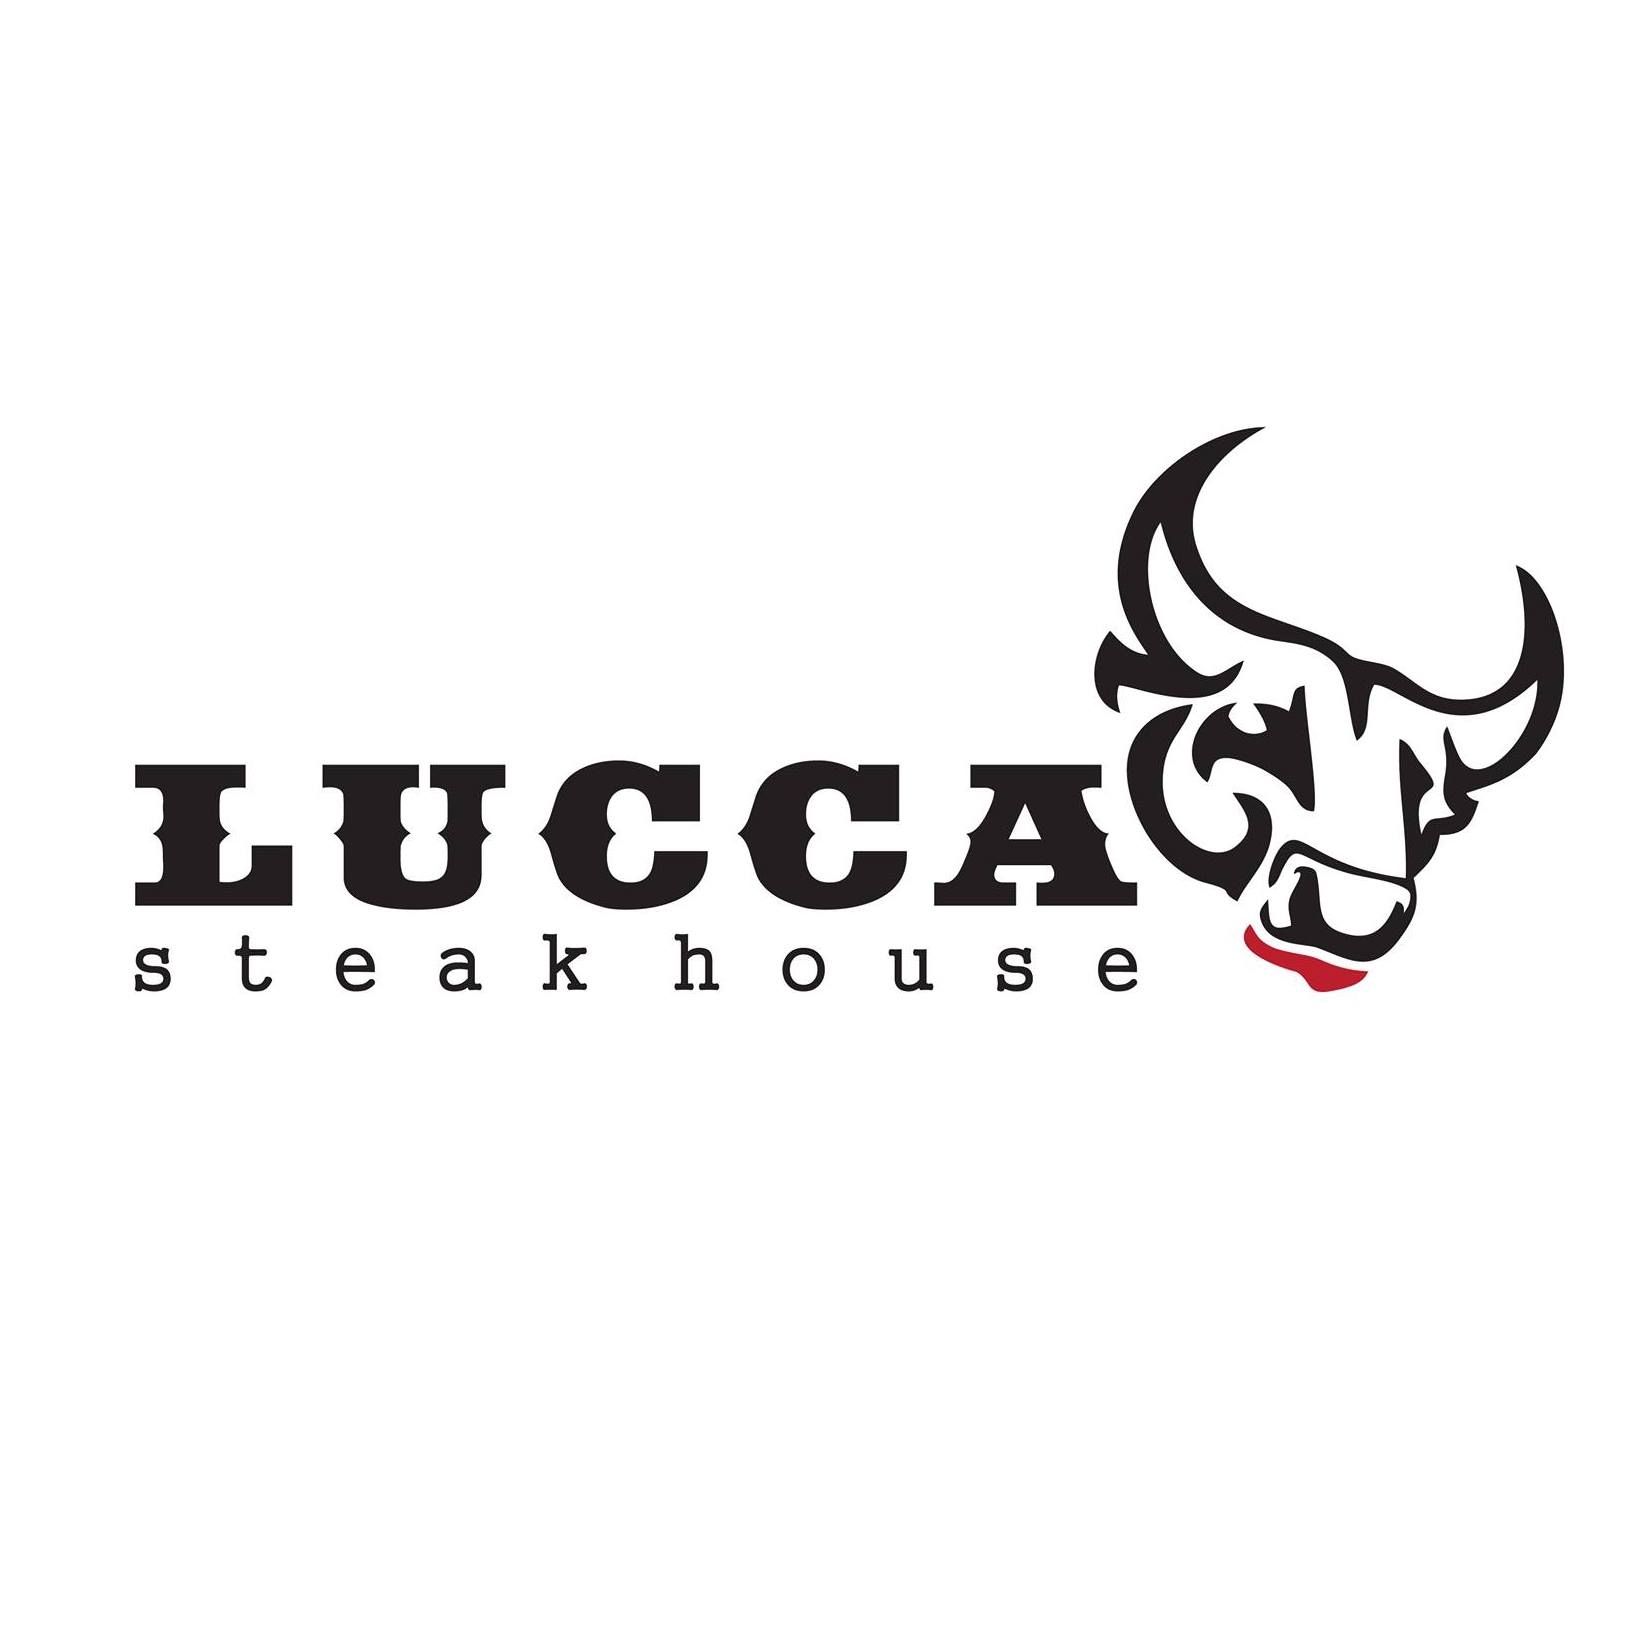 ‏ مطعم لوكا ستيك هاوسLucca Steakhouse